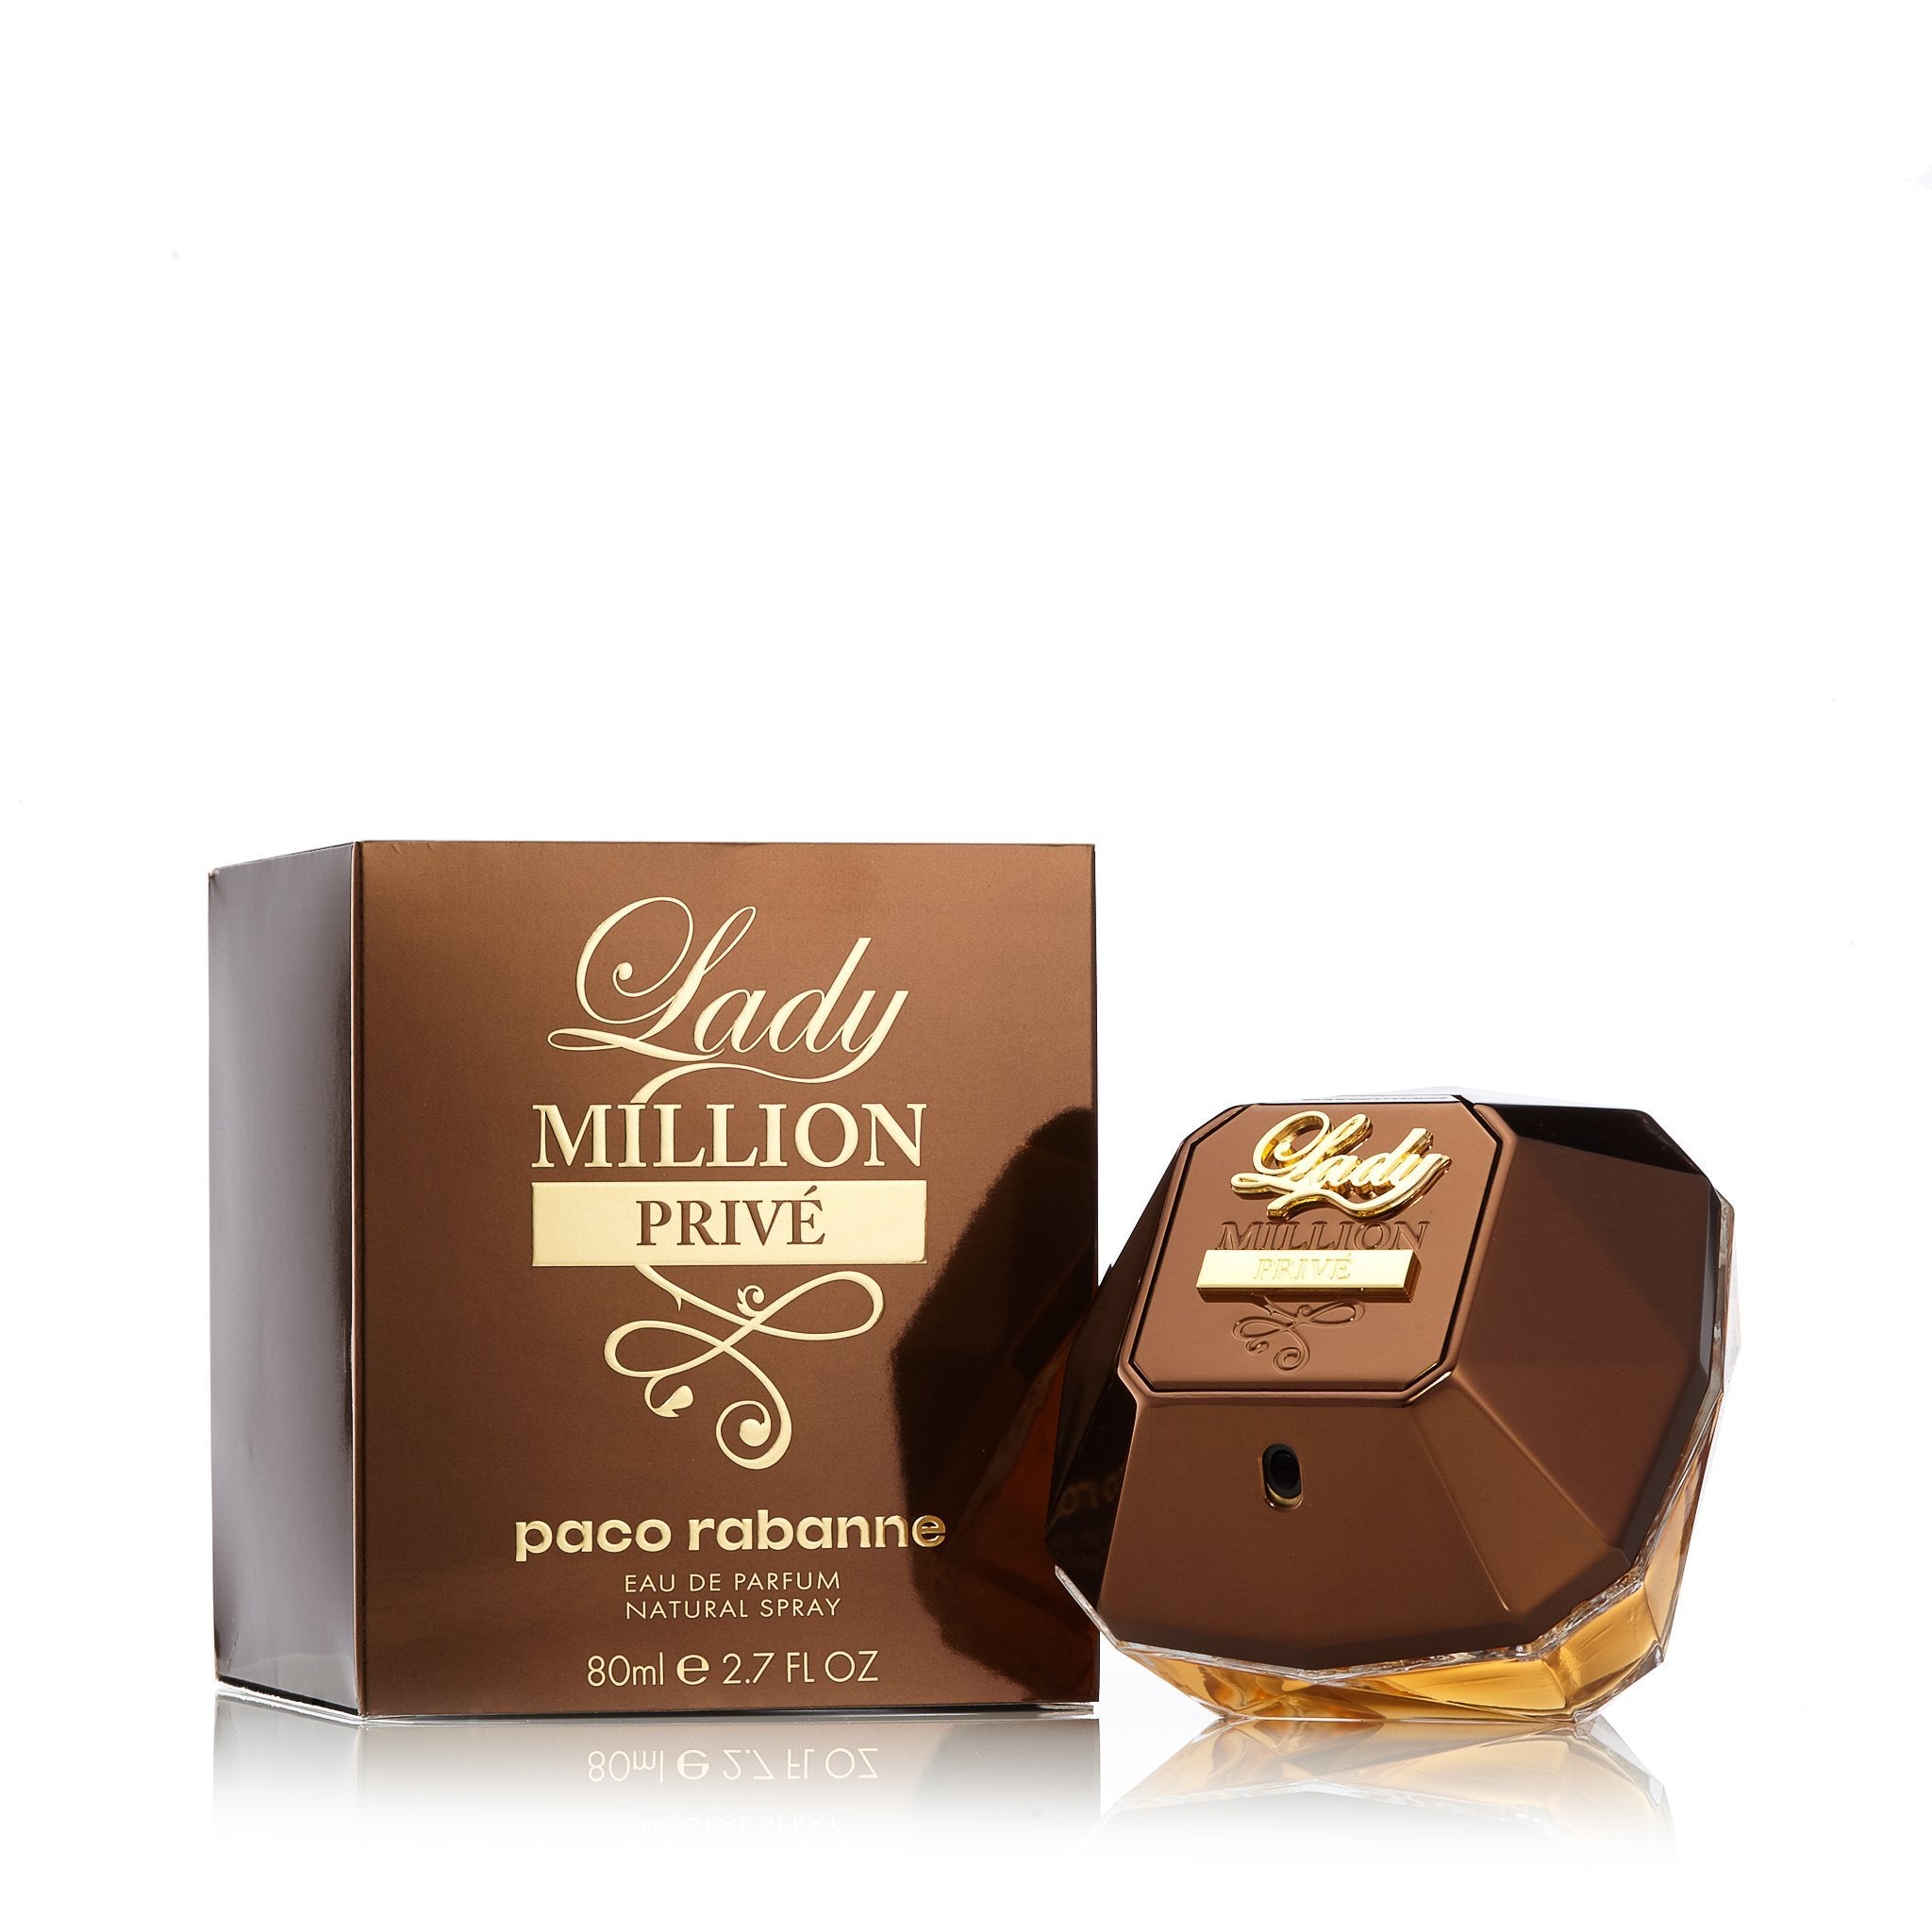 Lady Million Prive Eau de Parfum Spray 